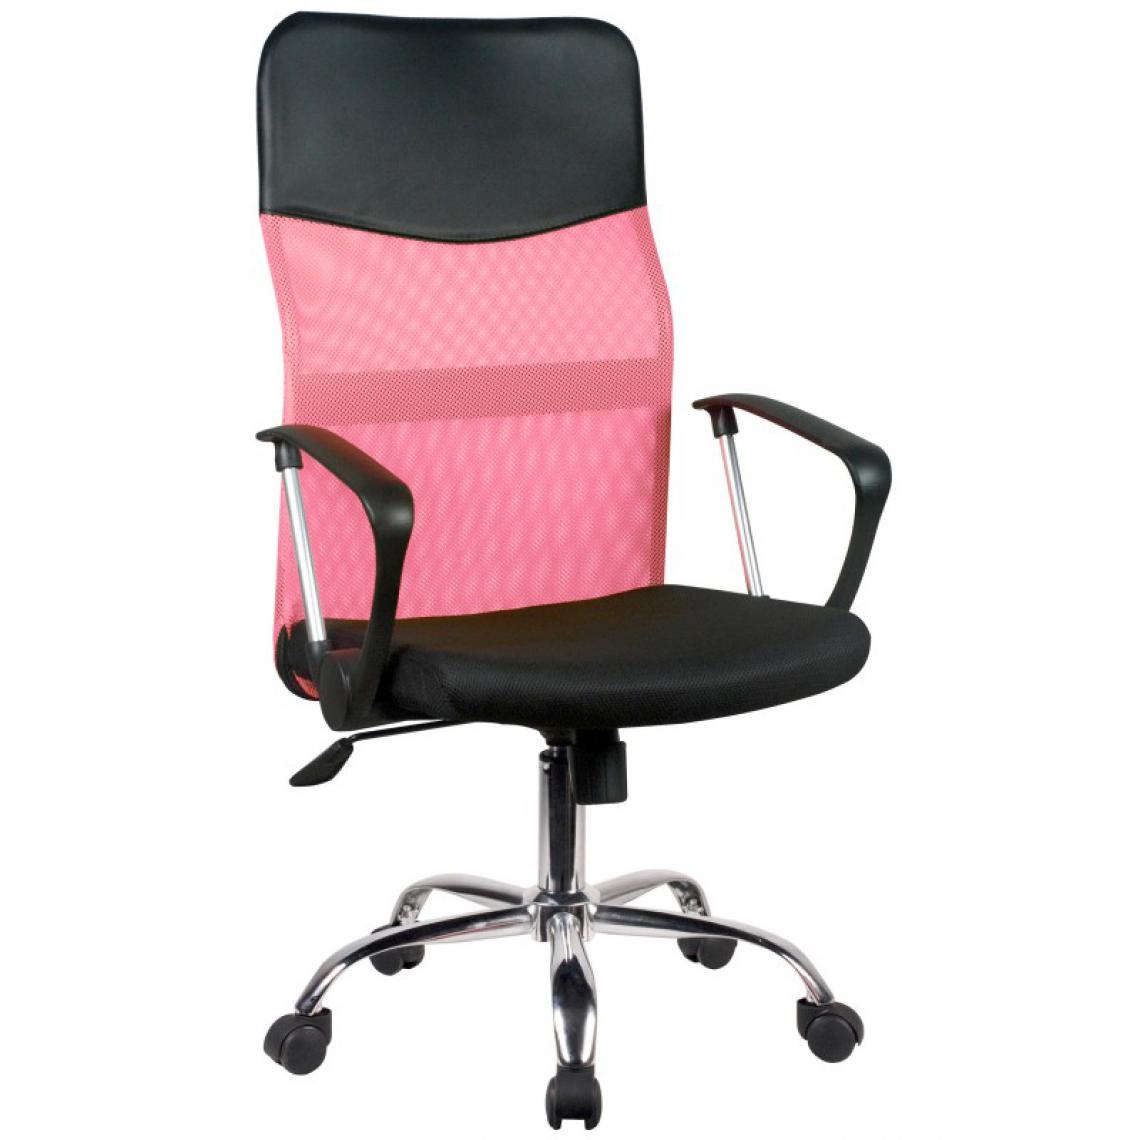 Hucoco - TANJE - Chaise de bureau pivotante - Hauteur ajustable 105-115cm - Fauteuil pivotant - Dossier ergonomique en Mesh - Rose - Chaises